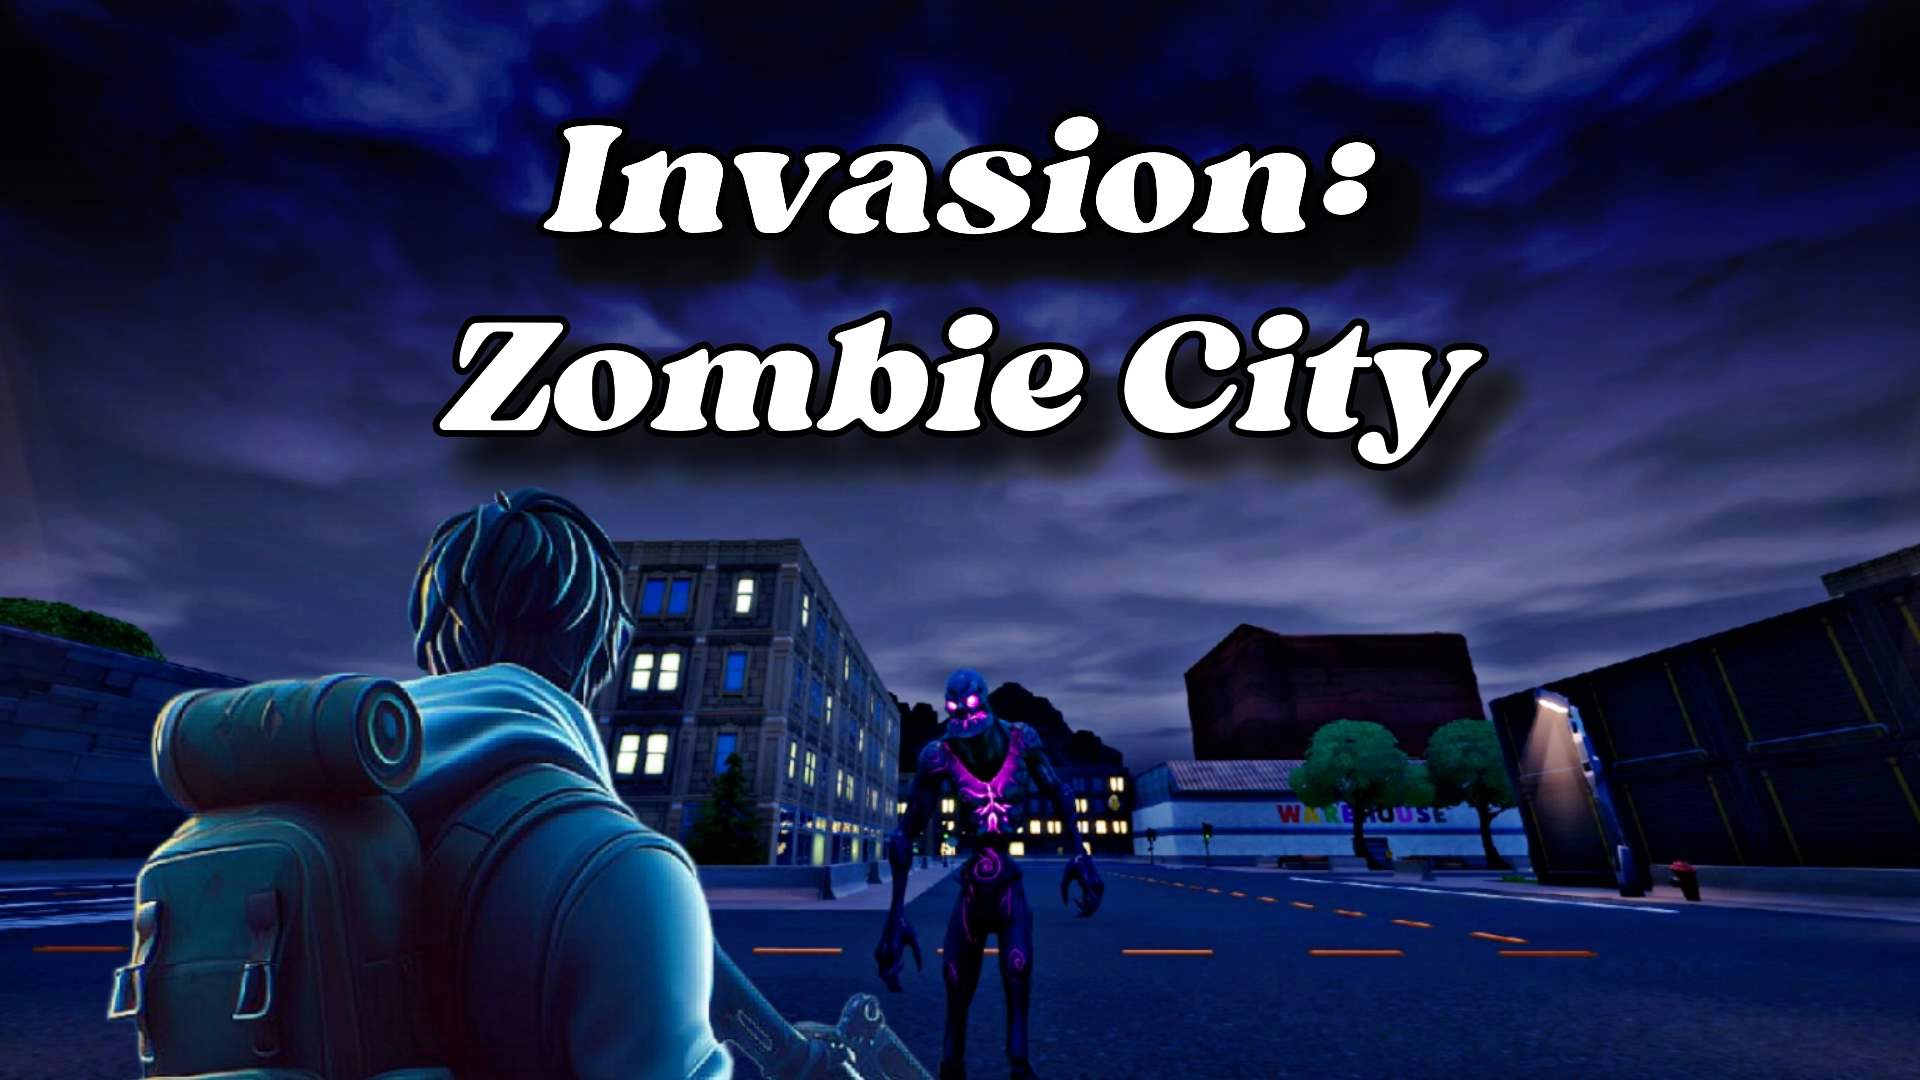 Invasion: Zombie City